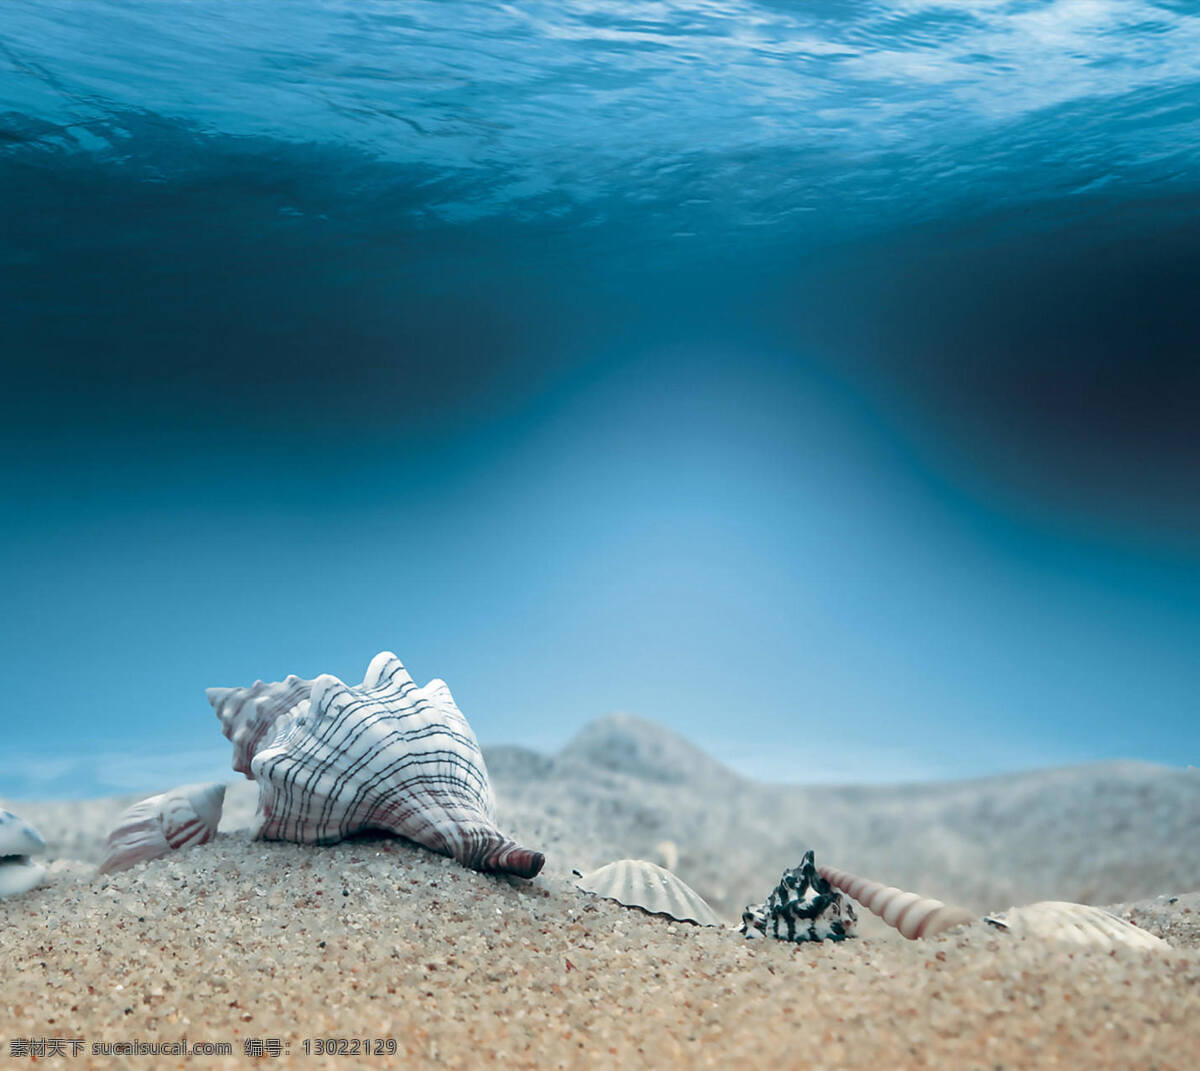 海底贝壳 海底 海螺 贝壳 沙 壁纸 冷色调 简约 唯美 自然景观 自然风景